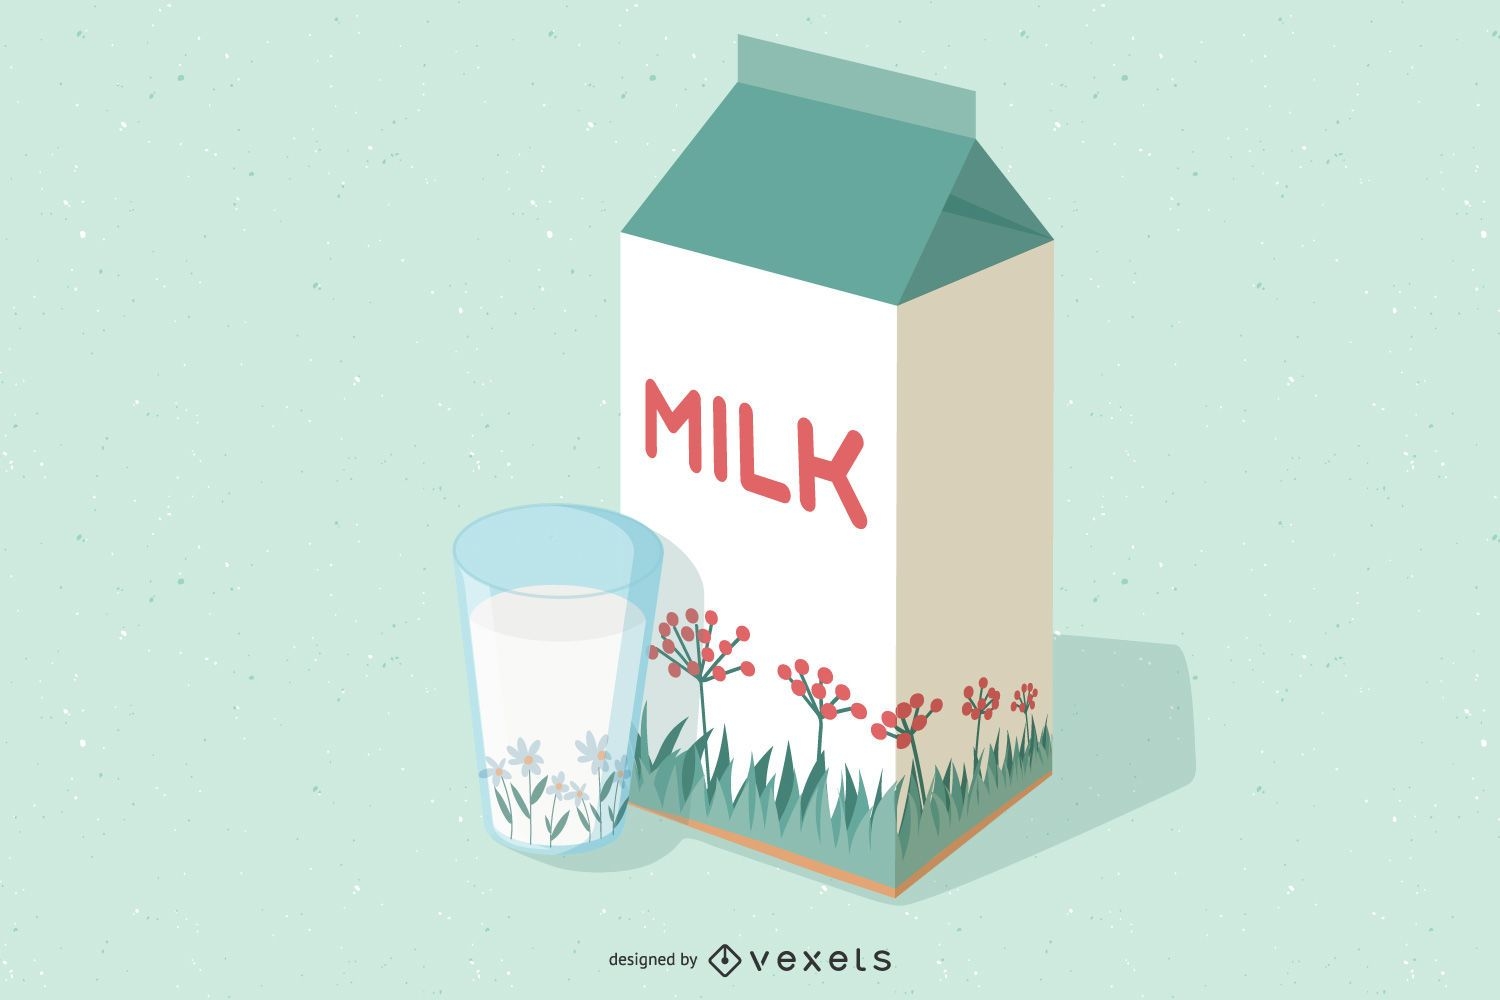 Paquete de leche 3D con dise?o floral